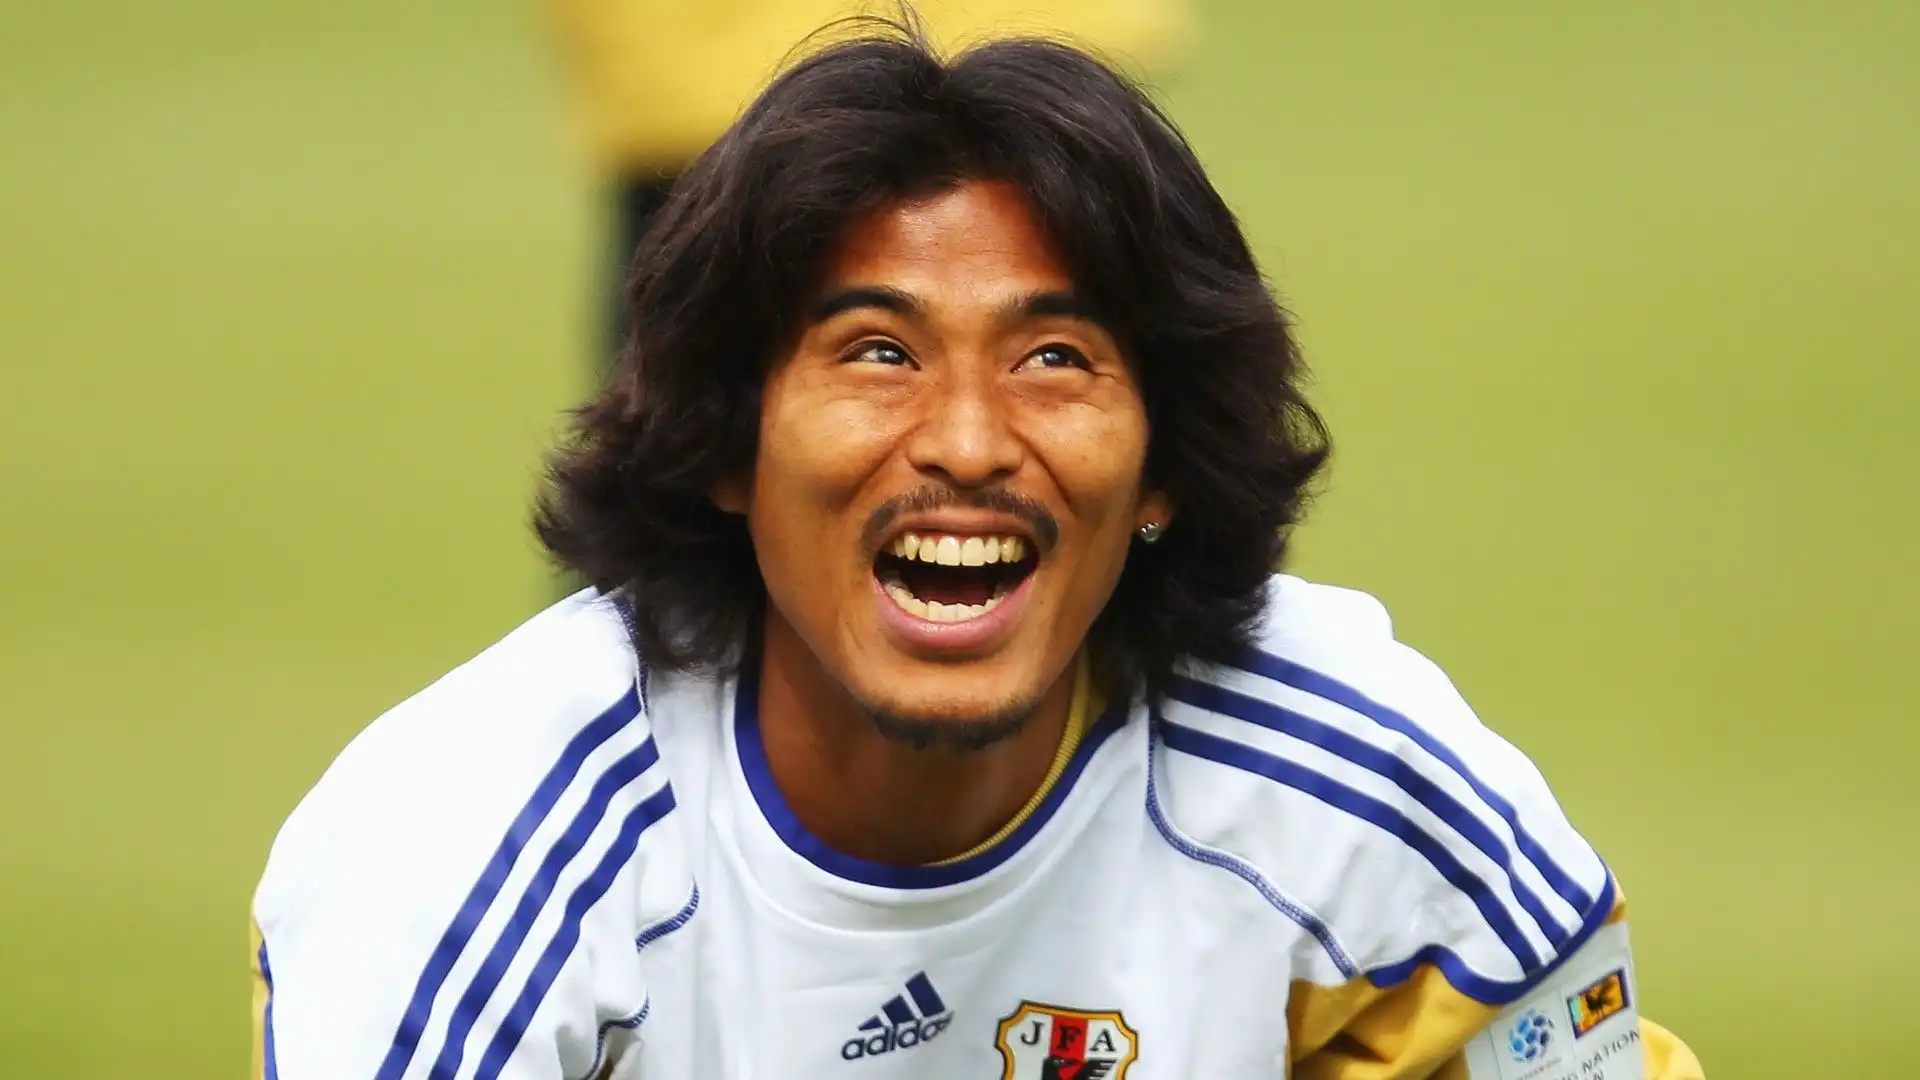 10- 17 gol in 107 partite giocate per Yuji Nakazawa